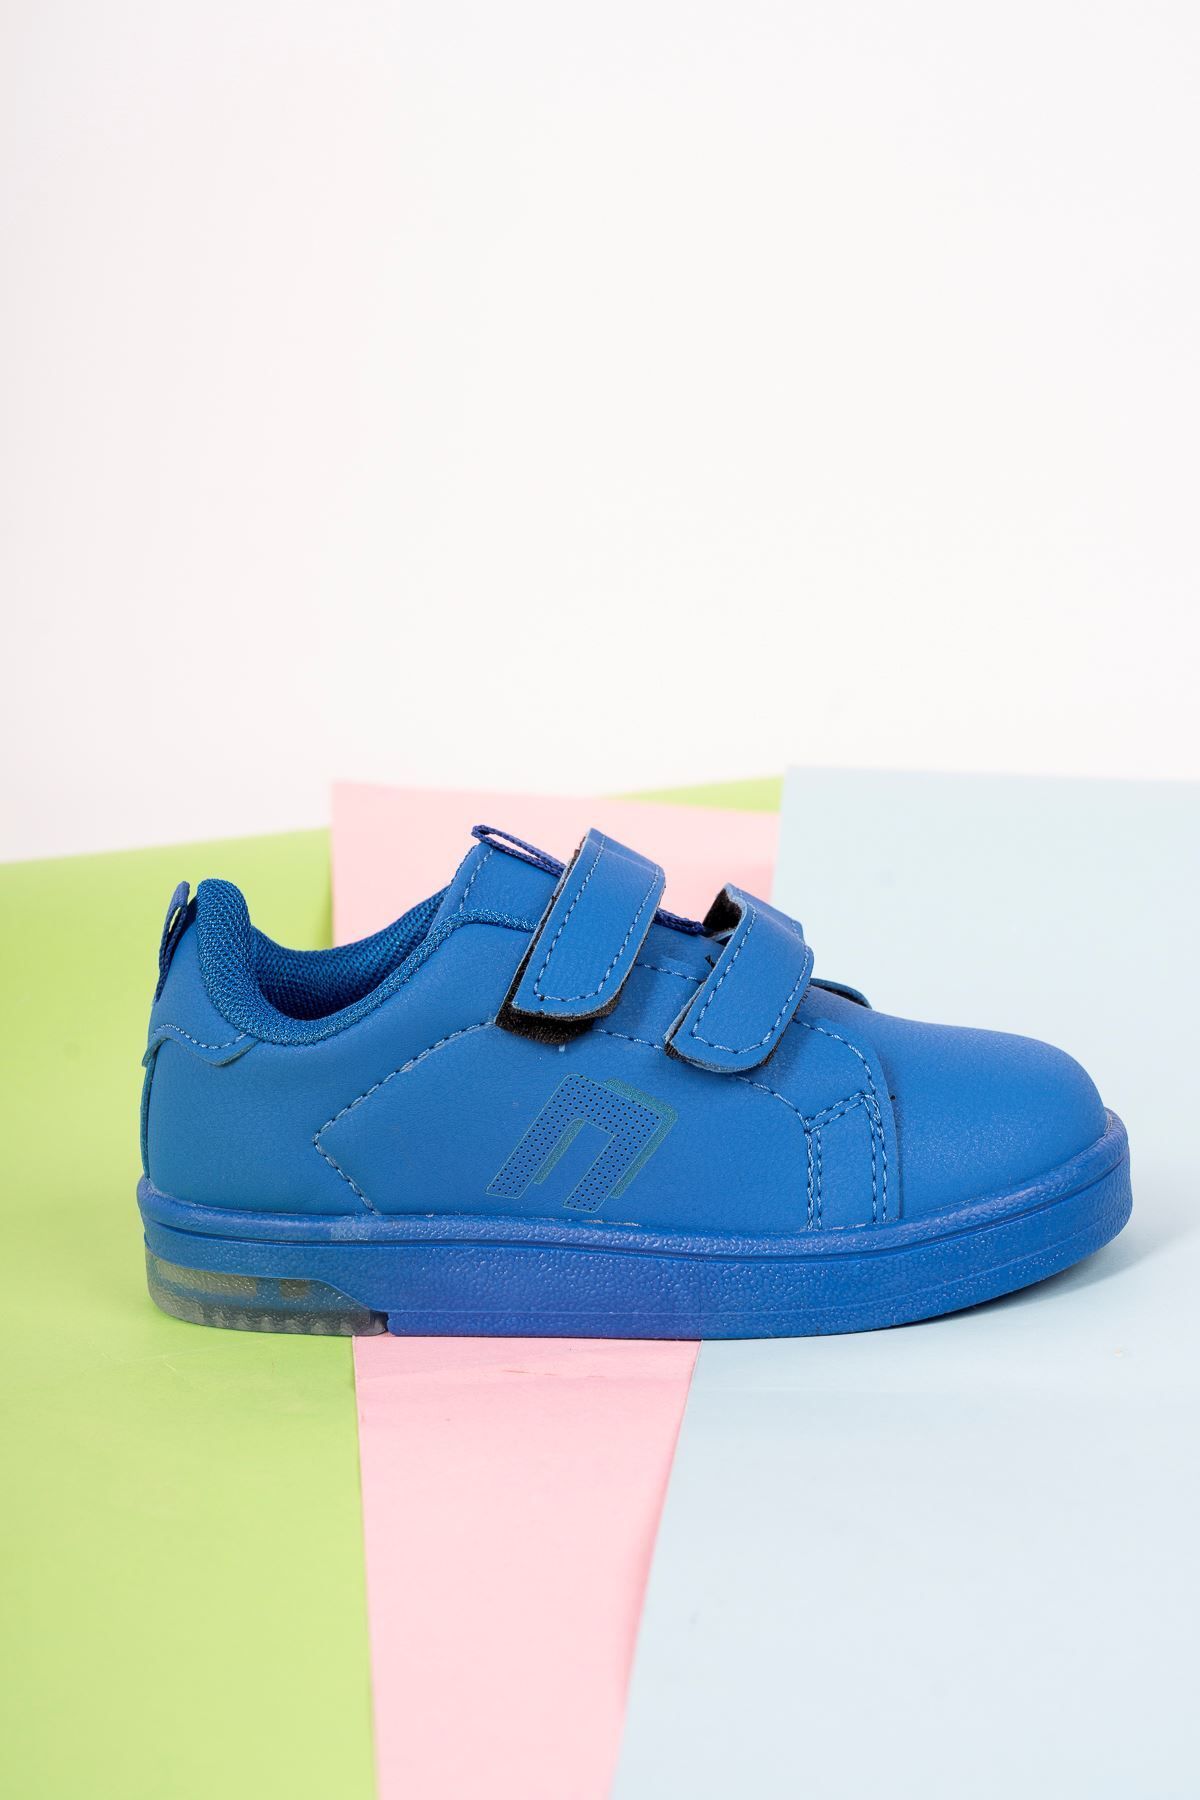 epaavm Çift Cırtlı Işıklı Mavi Bebe Spor Ayakkabı